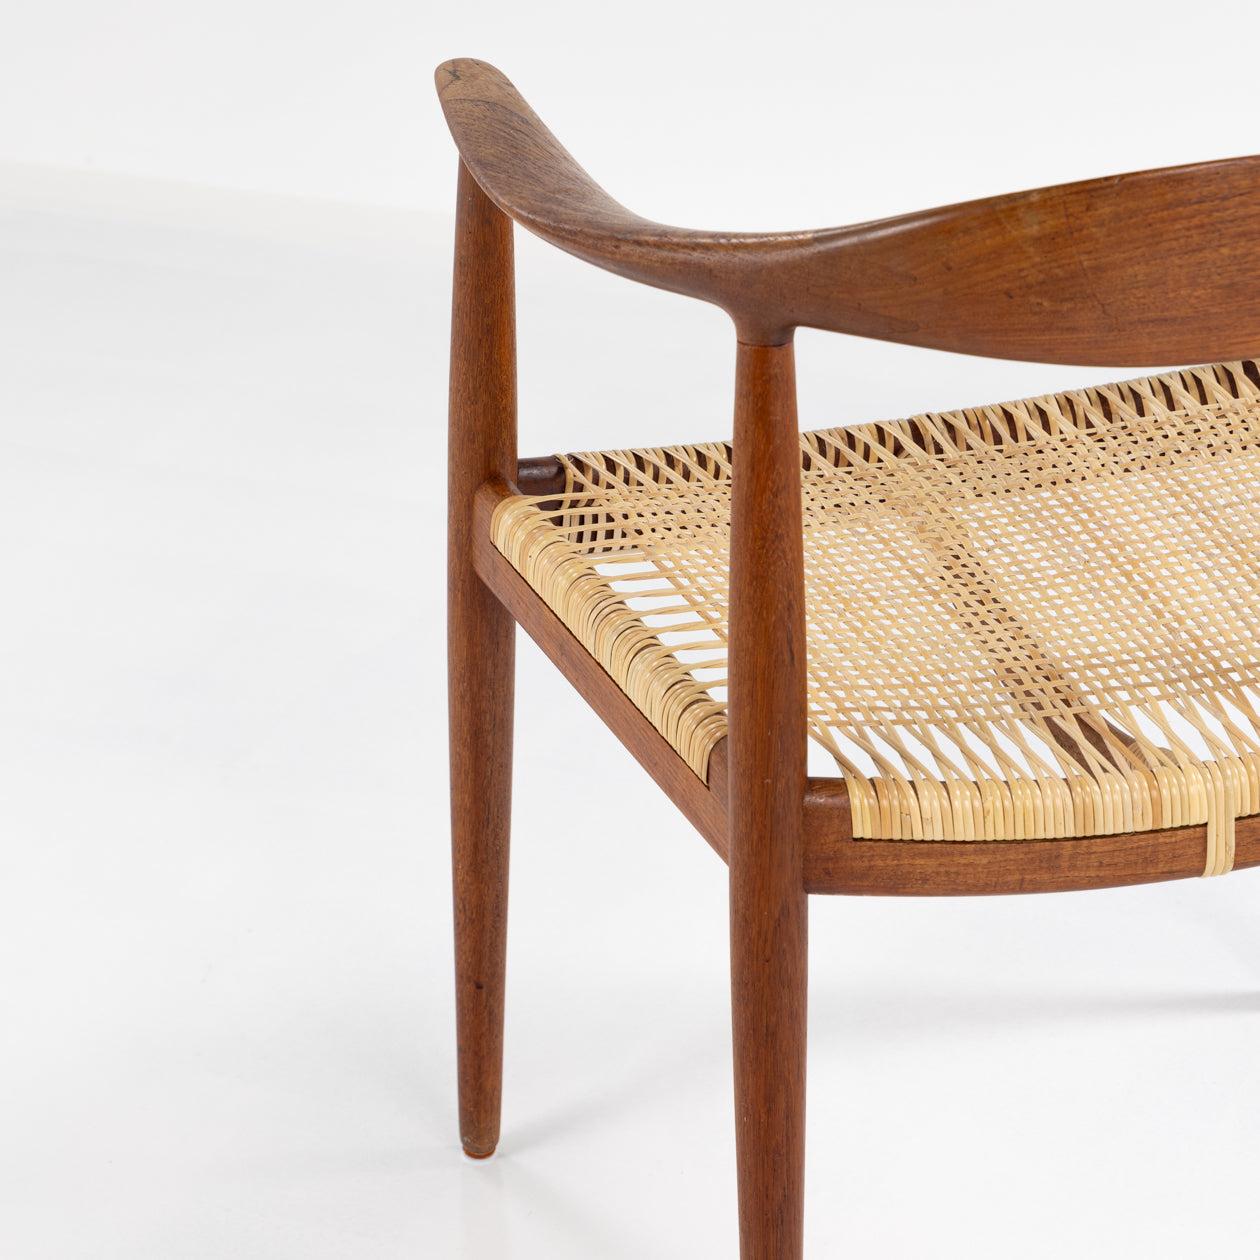 Danish JH 501 - 'The Chair' in teak by Hans J. Wegner